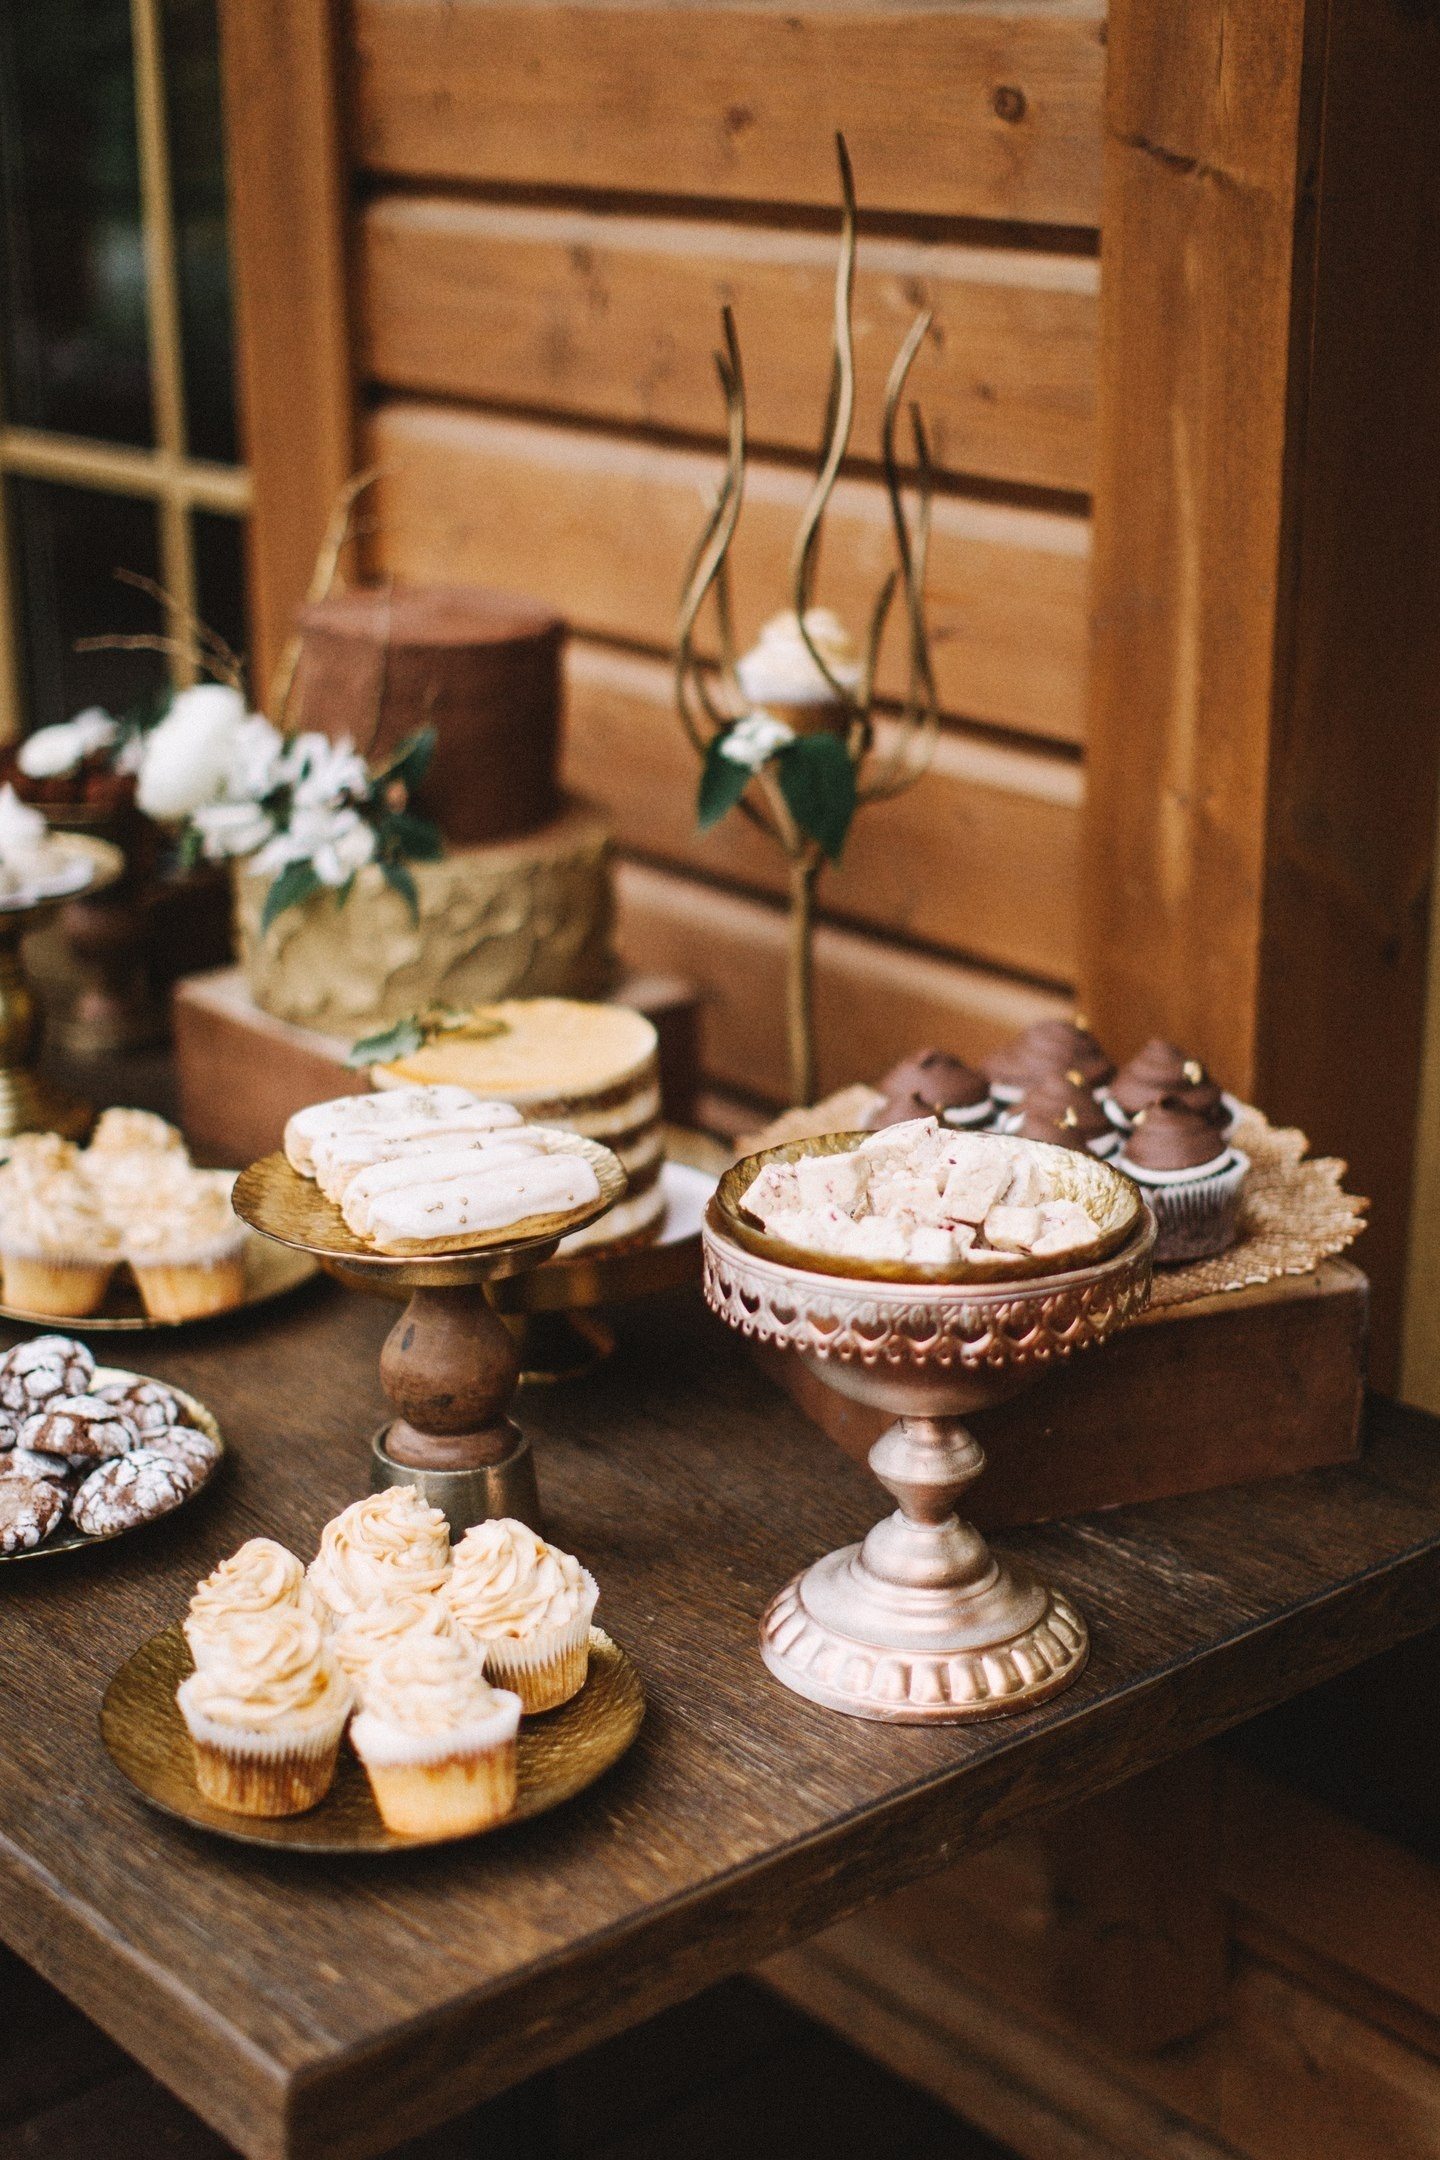 Счупени барове шоколад, трюфели, мока въздушни десерти, украсени с кафе на зърна и ажурни бисквити с пудра в сватбен стил изглеждат чудесно в компанията на стари кутии и богато украсени щандове